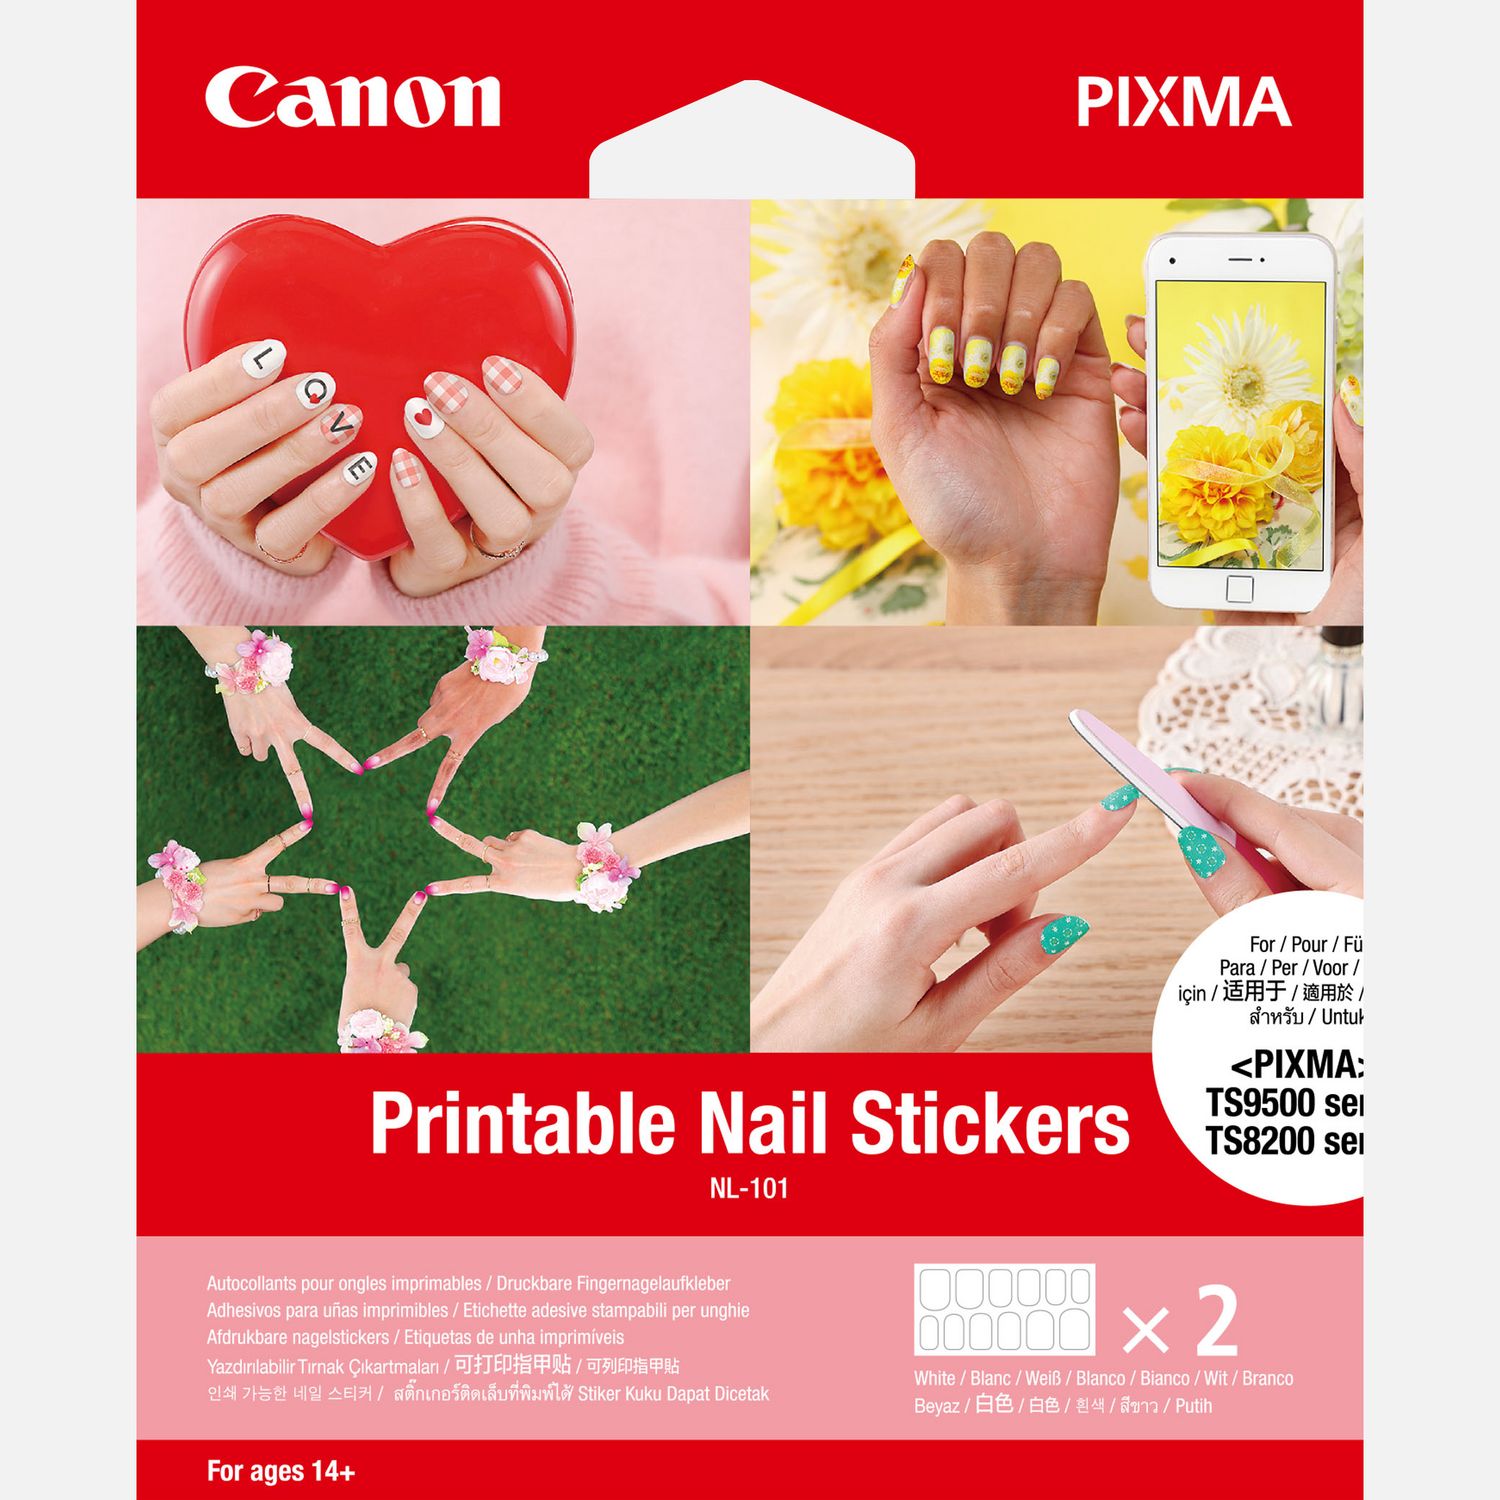 Autocollants pour ongles imprimables de Canon NL-101, 24 autocollants